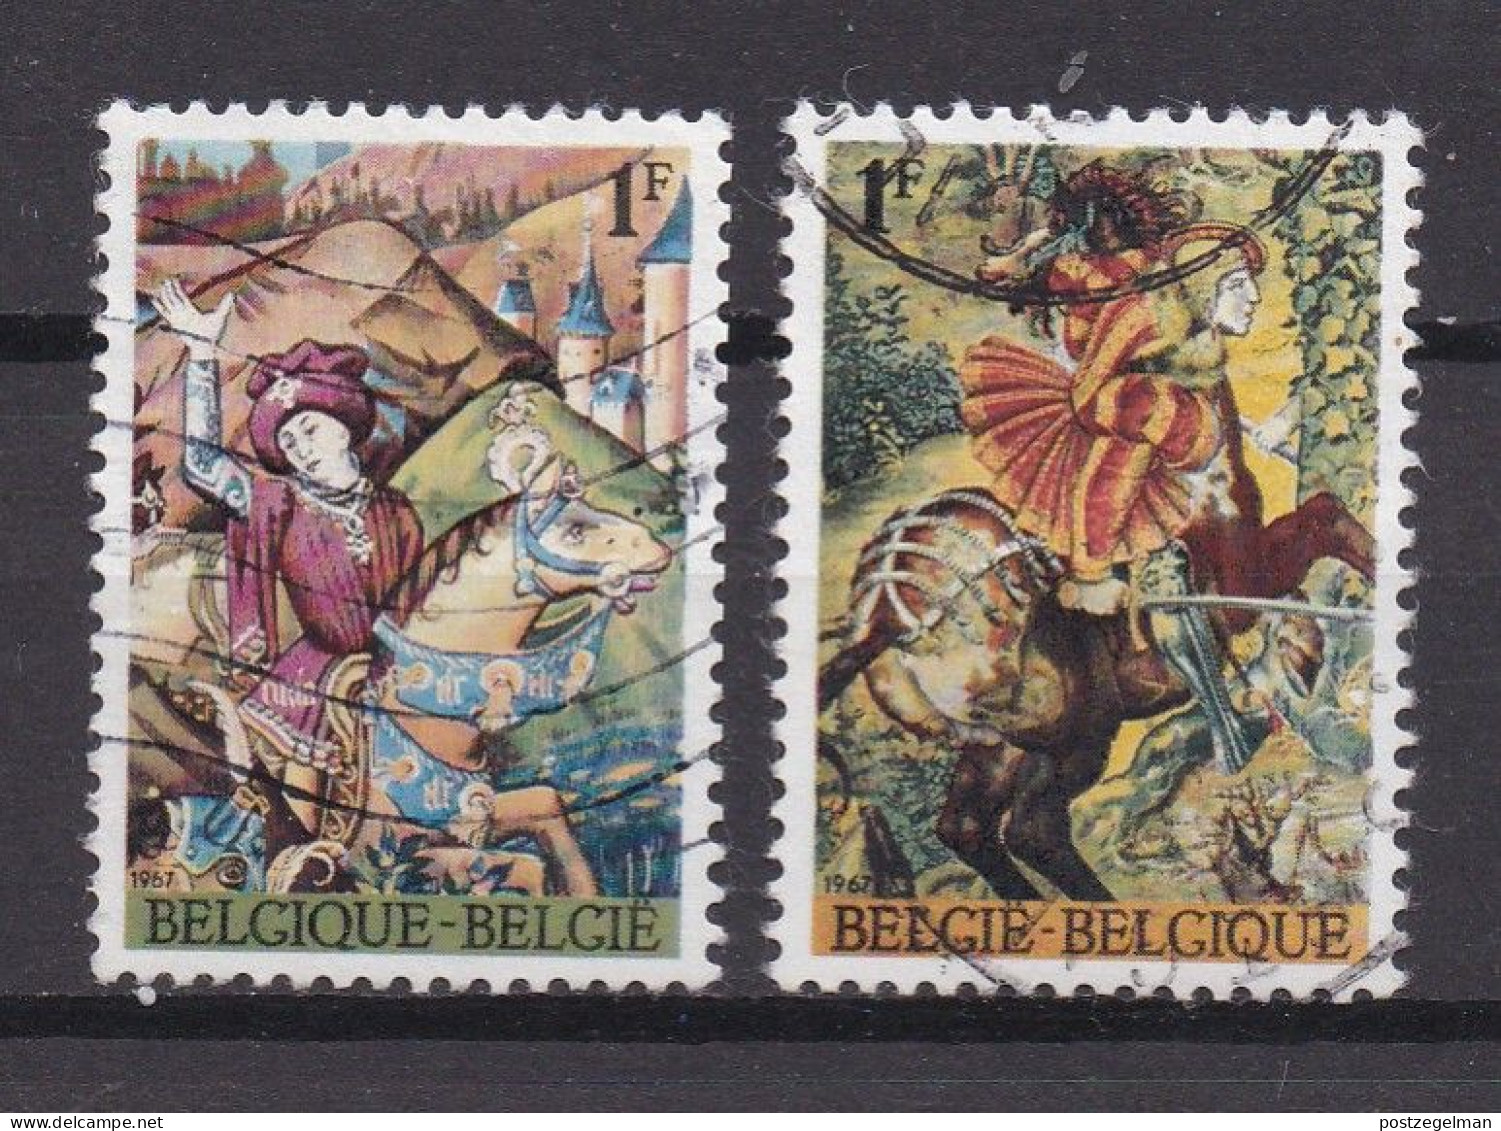 BELGIUM,1967, Used Stamp(s), Lodewyk De Raet , M1482-1483 , Scan 10445, - Usati